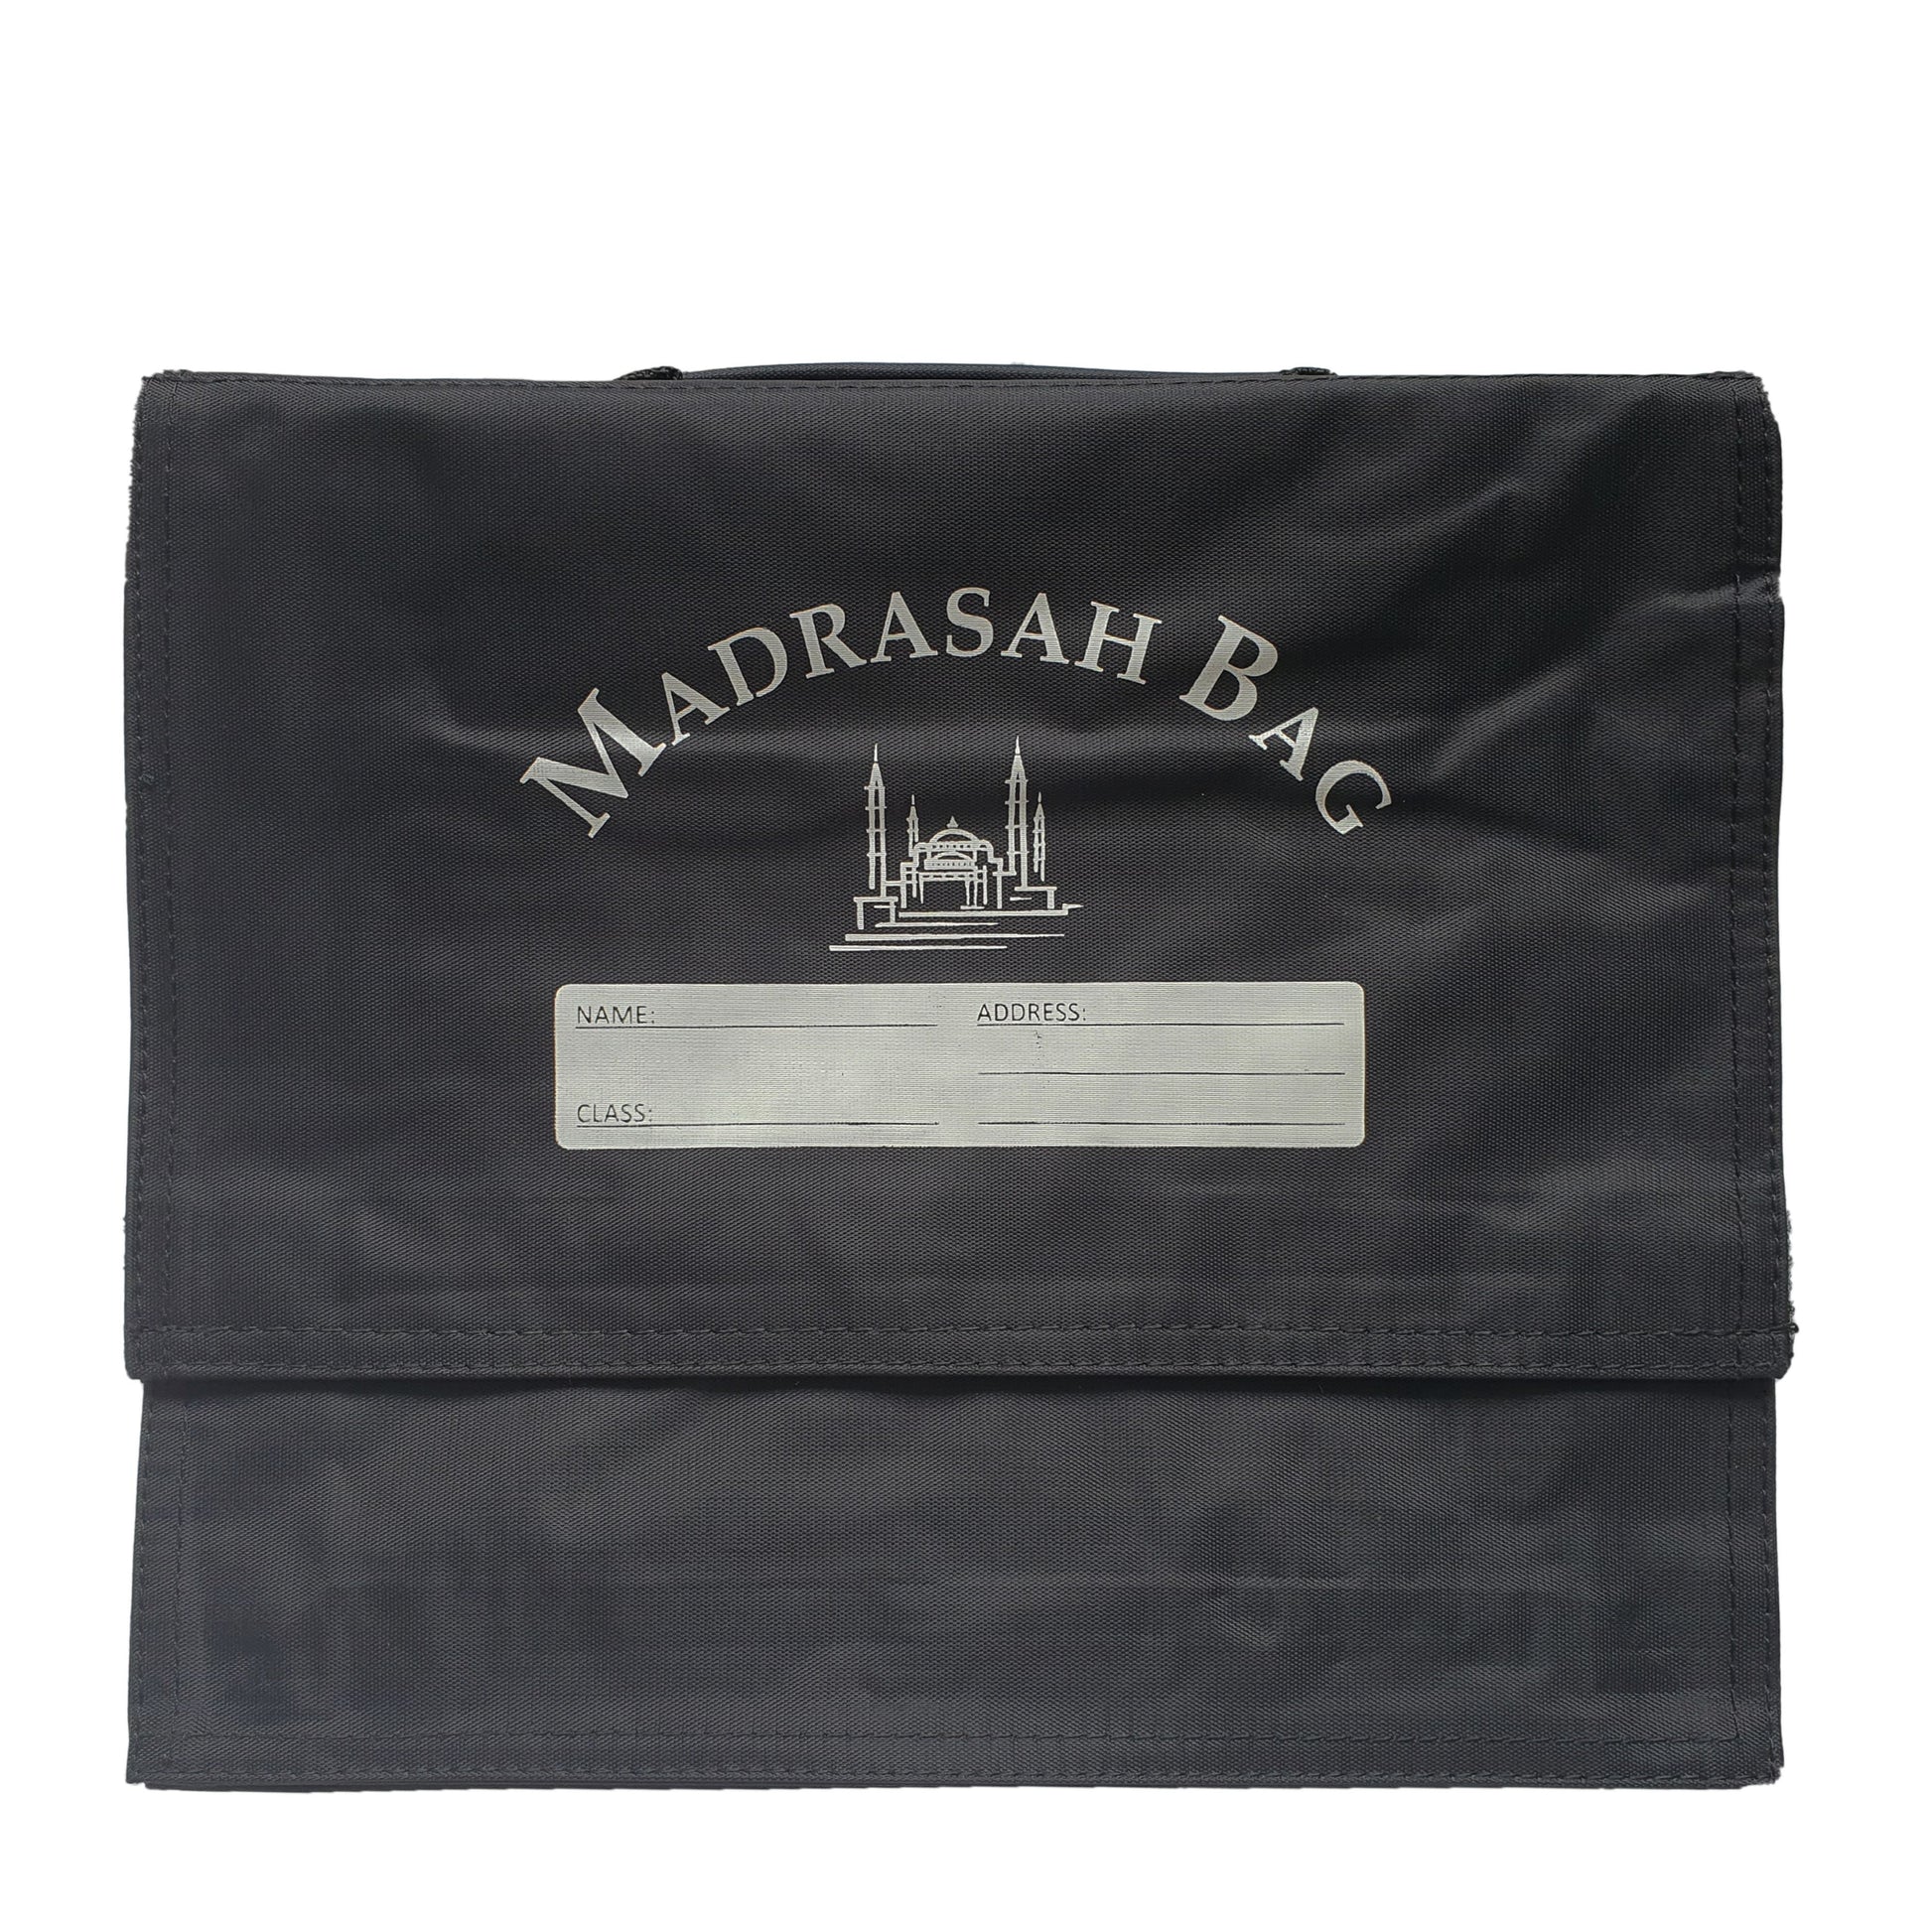 Madrasah bag